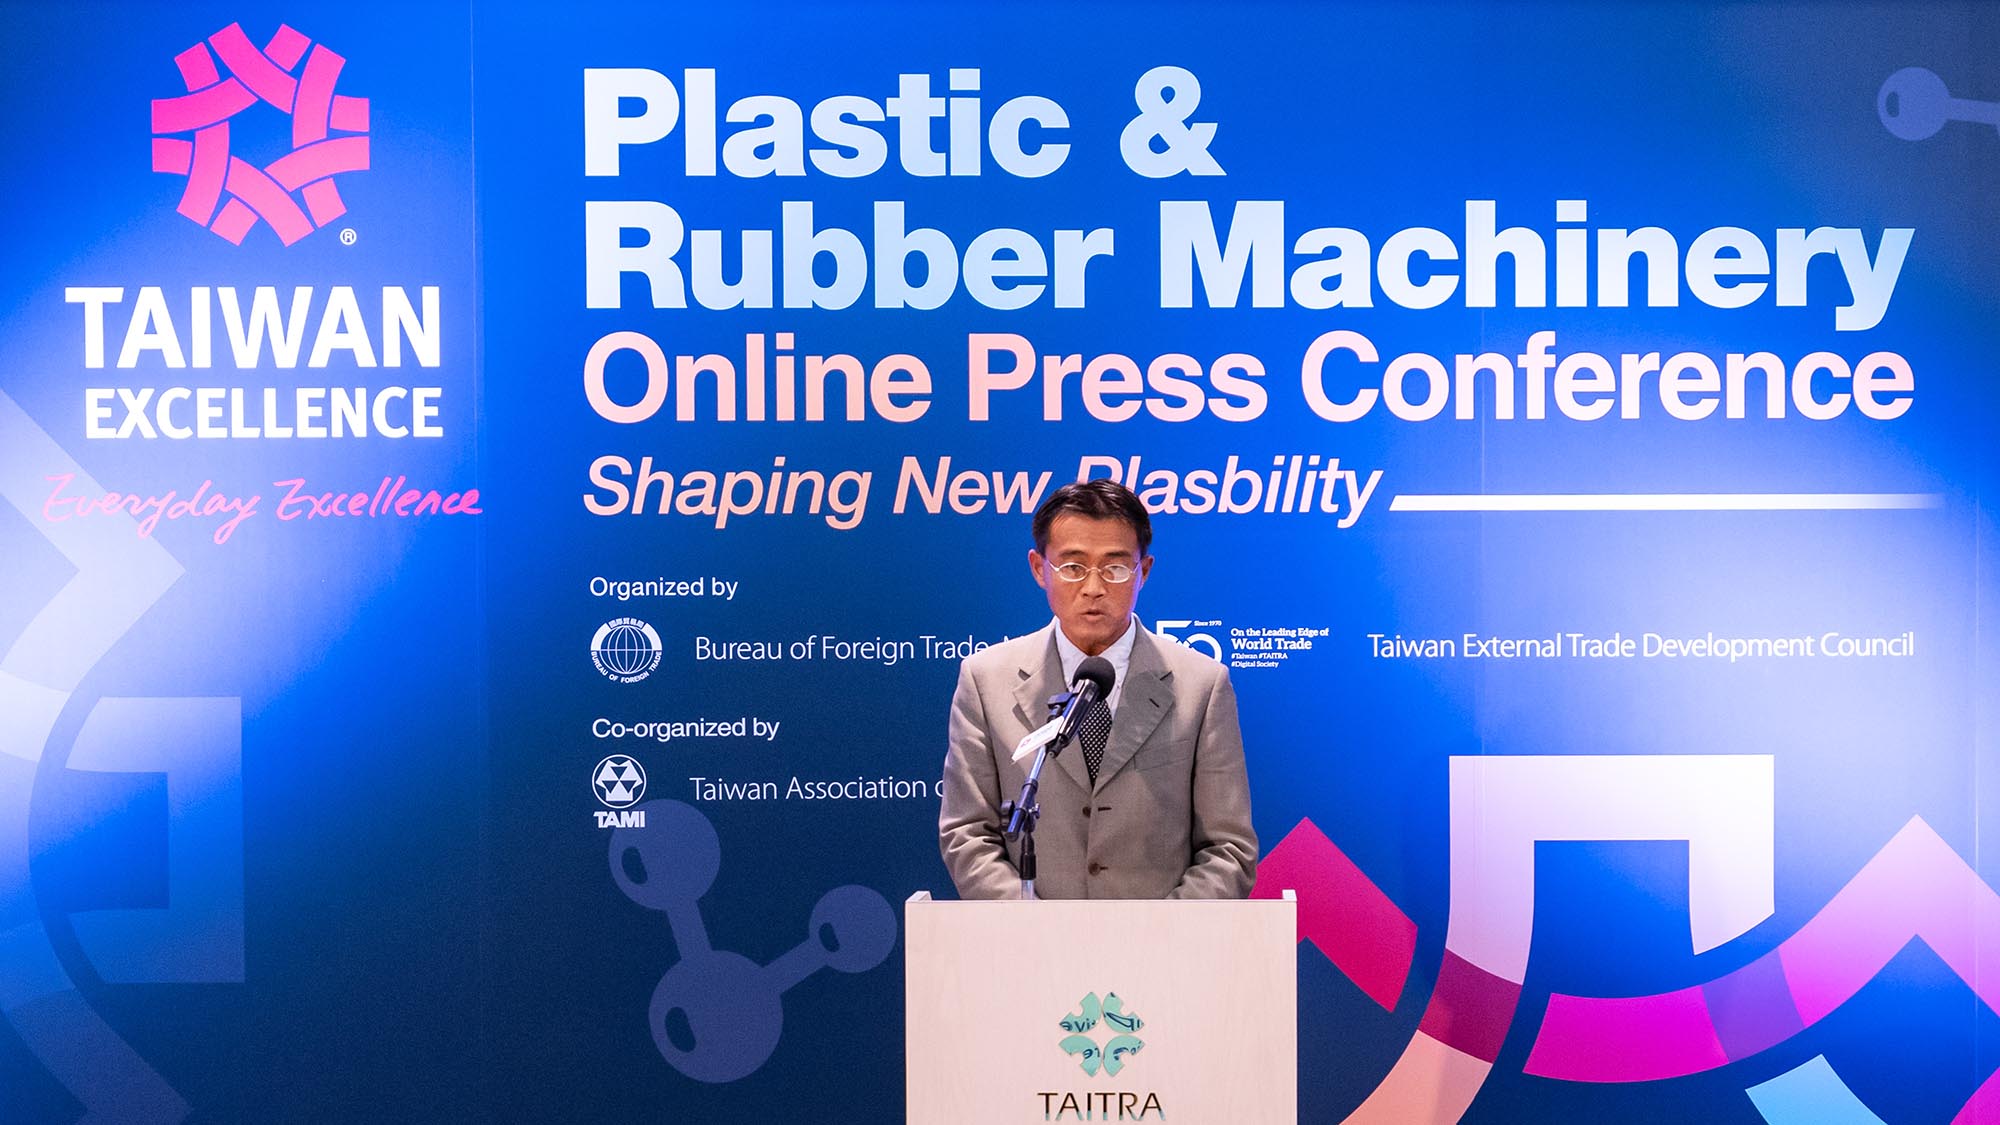 Taiwan Excellence giới thiệu máy móc tiên tiến giúp gia tăng năng suất & thân thiện với môi trường trong sản xuất nhựa và cao su